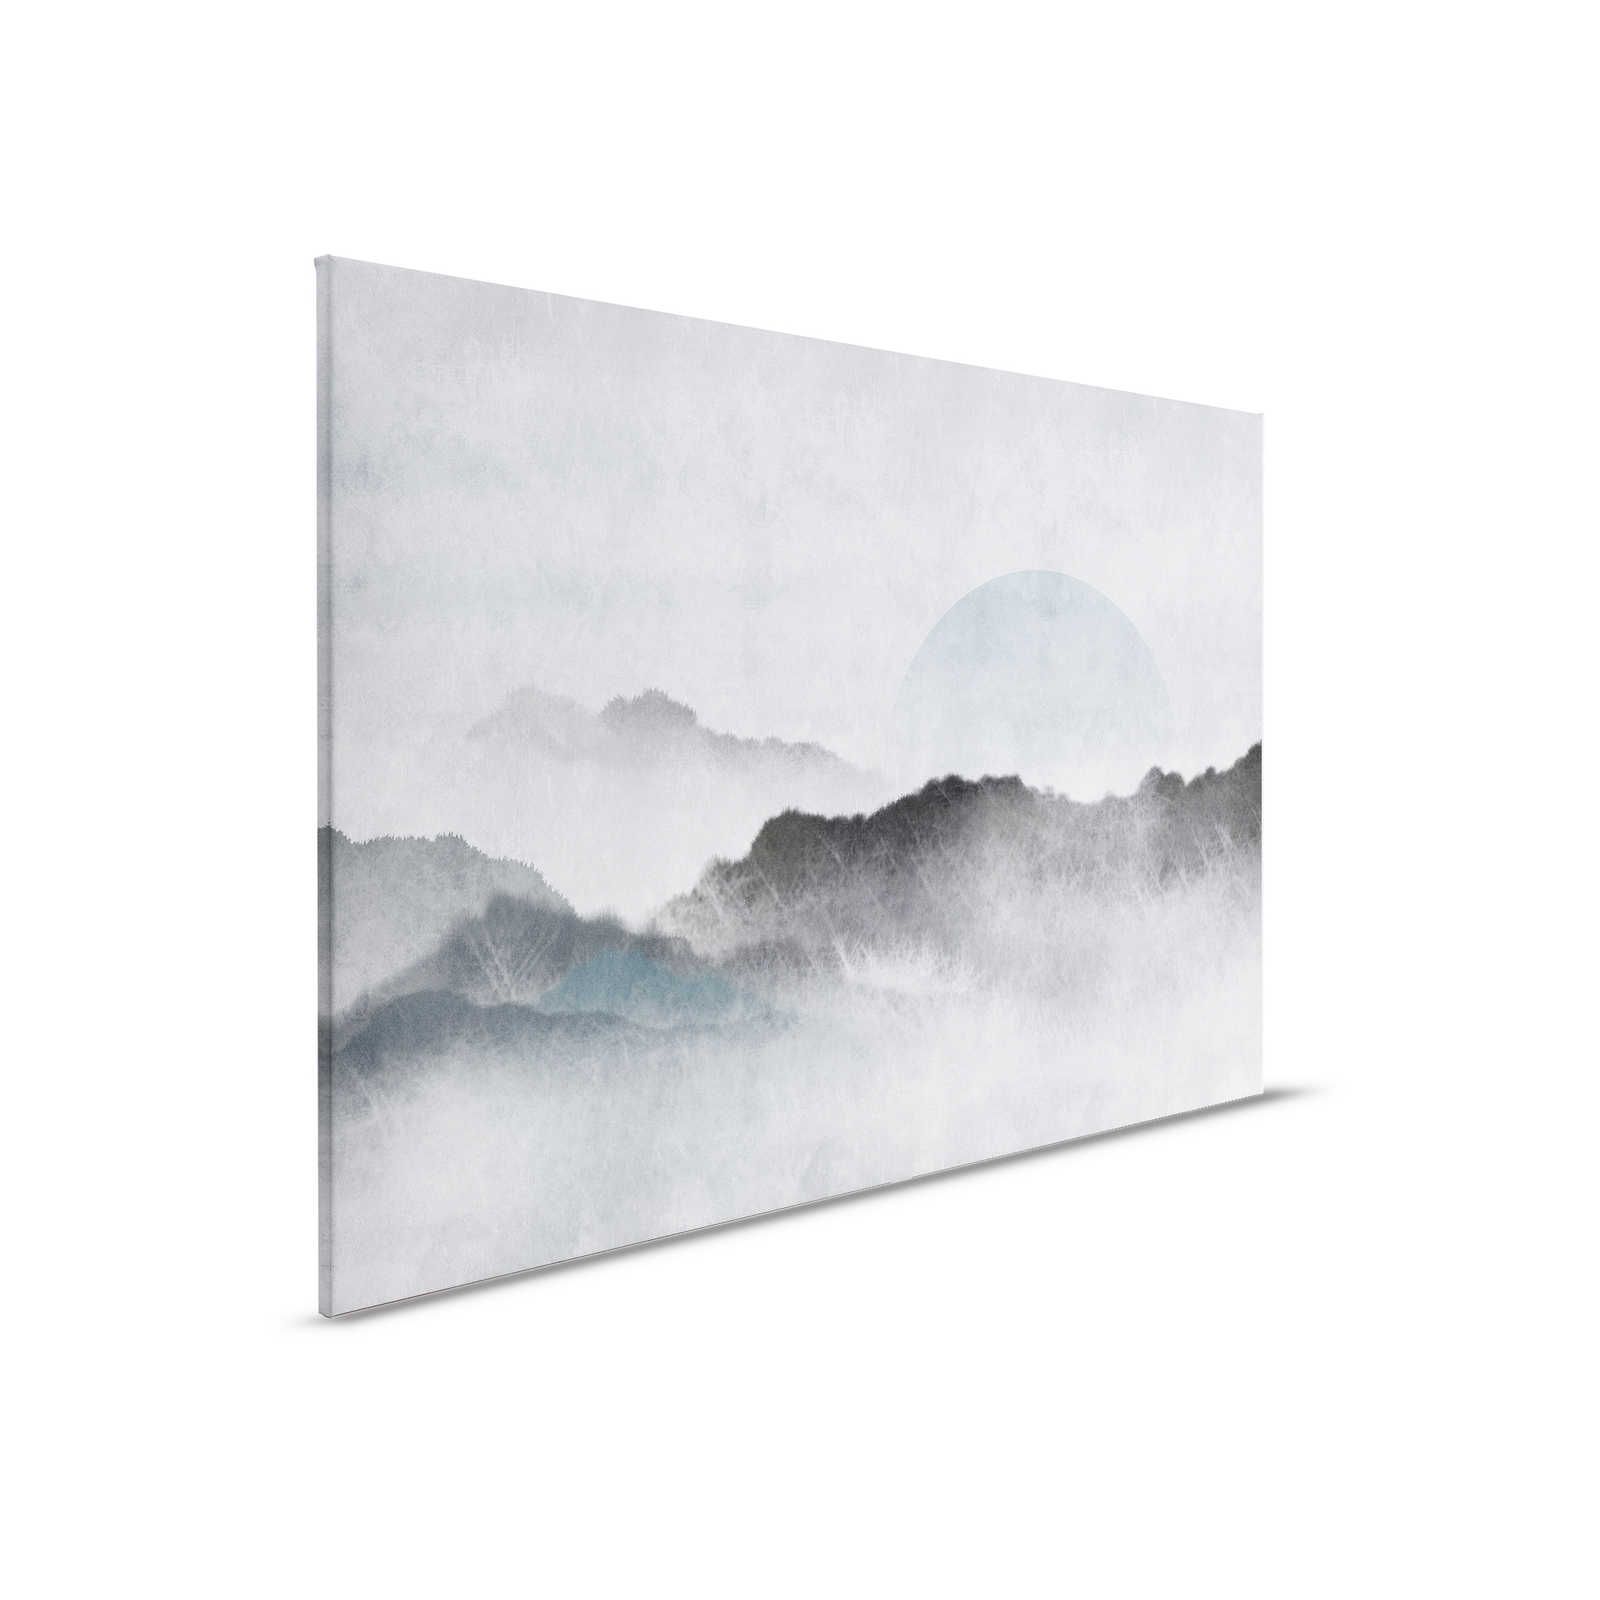 Akaishi 2 - Quadro su tela Tipo asiatica Paesaggio di montagna, grigio e bianco - 0,90 m x 0,60 m
